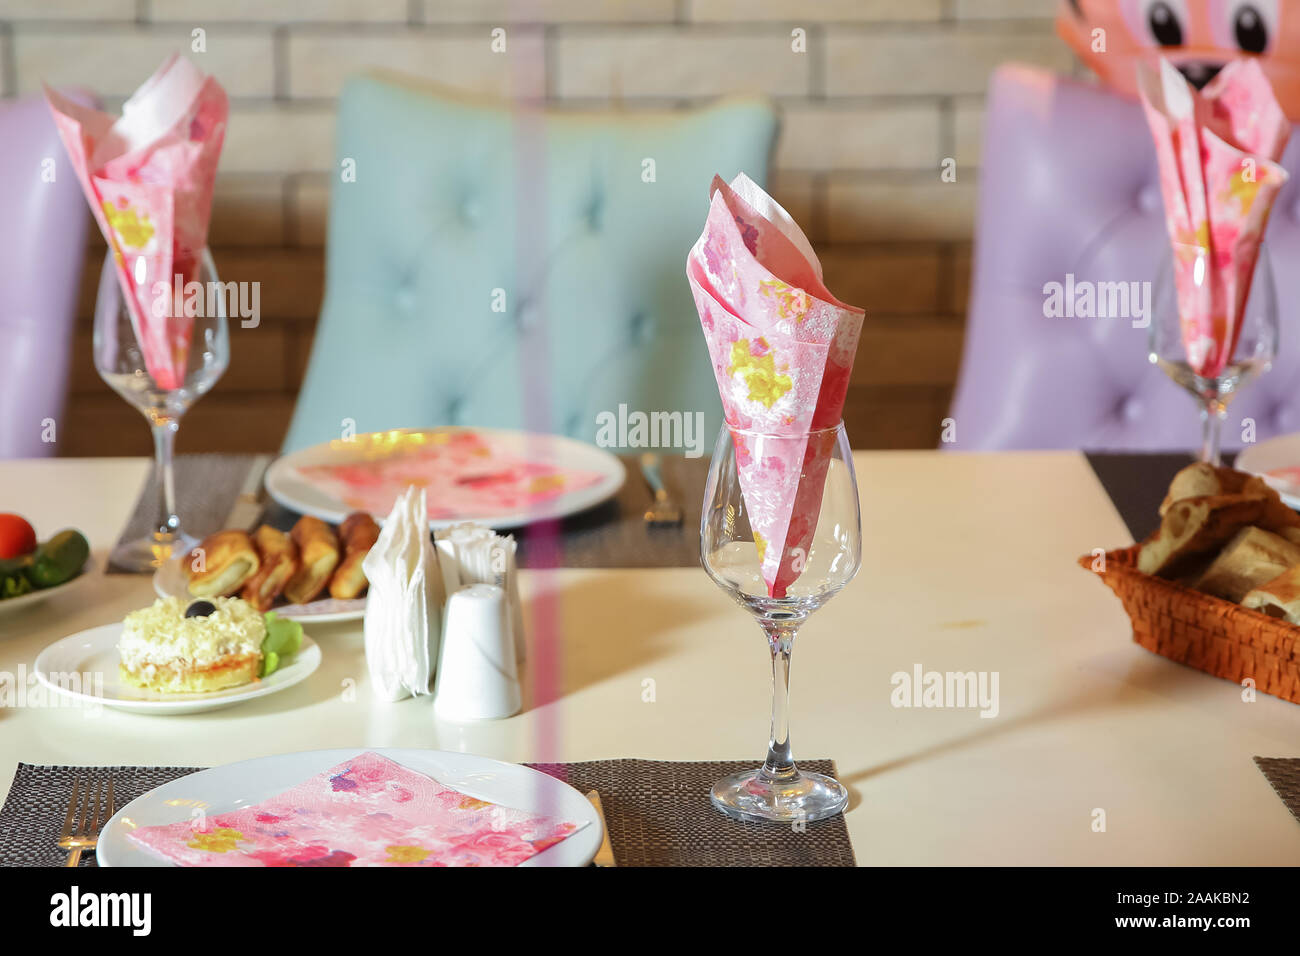 Papiers tissu rose en verre - table de mariage .décoration avec verres et  serviettes en papier . serviette sur la plaque . Verre avec des serviettes  en papier sur la table Photo Stock - Alamy